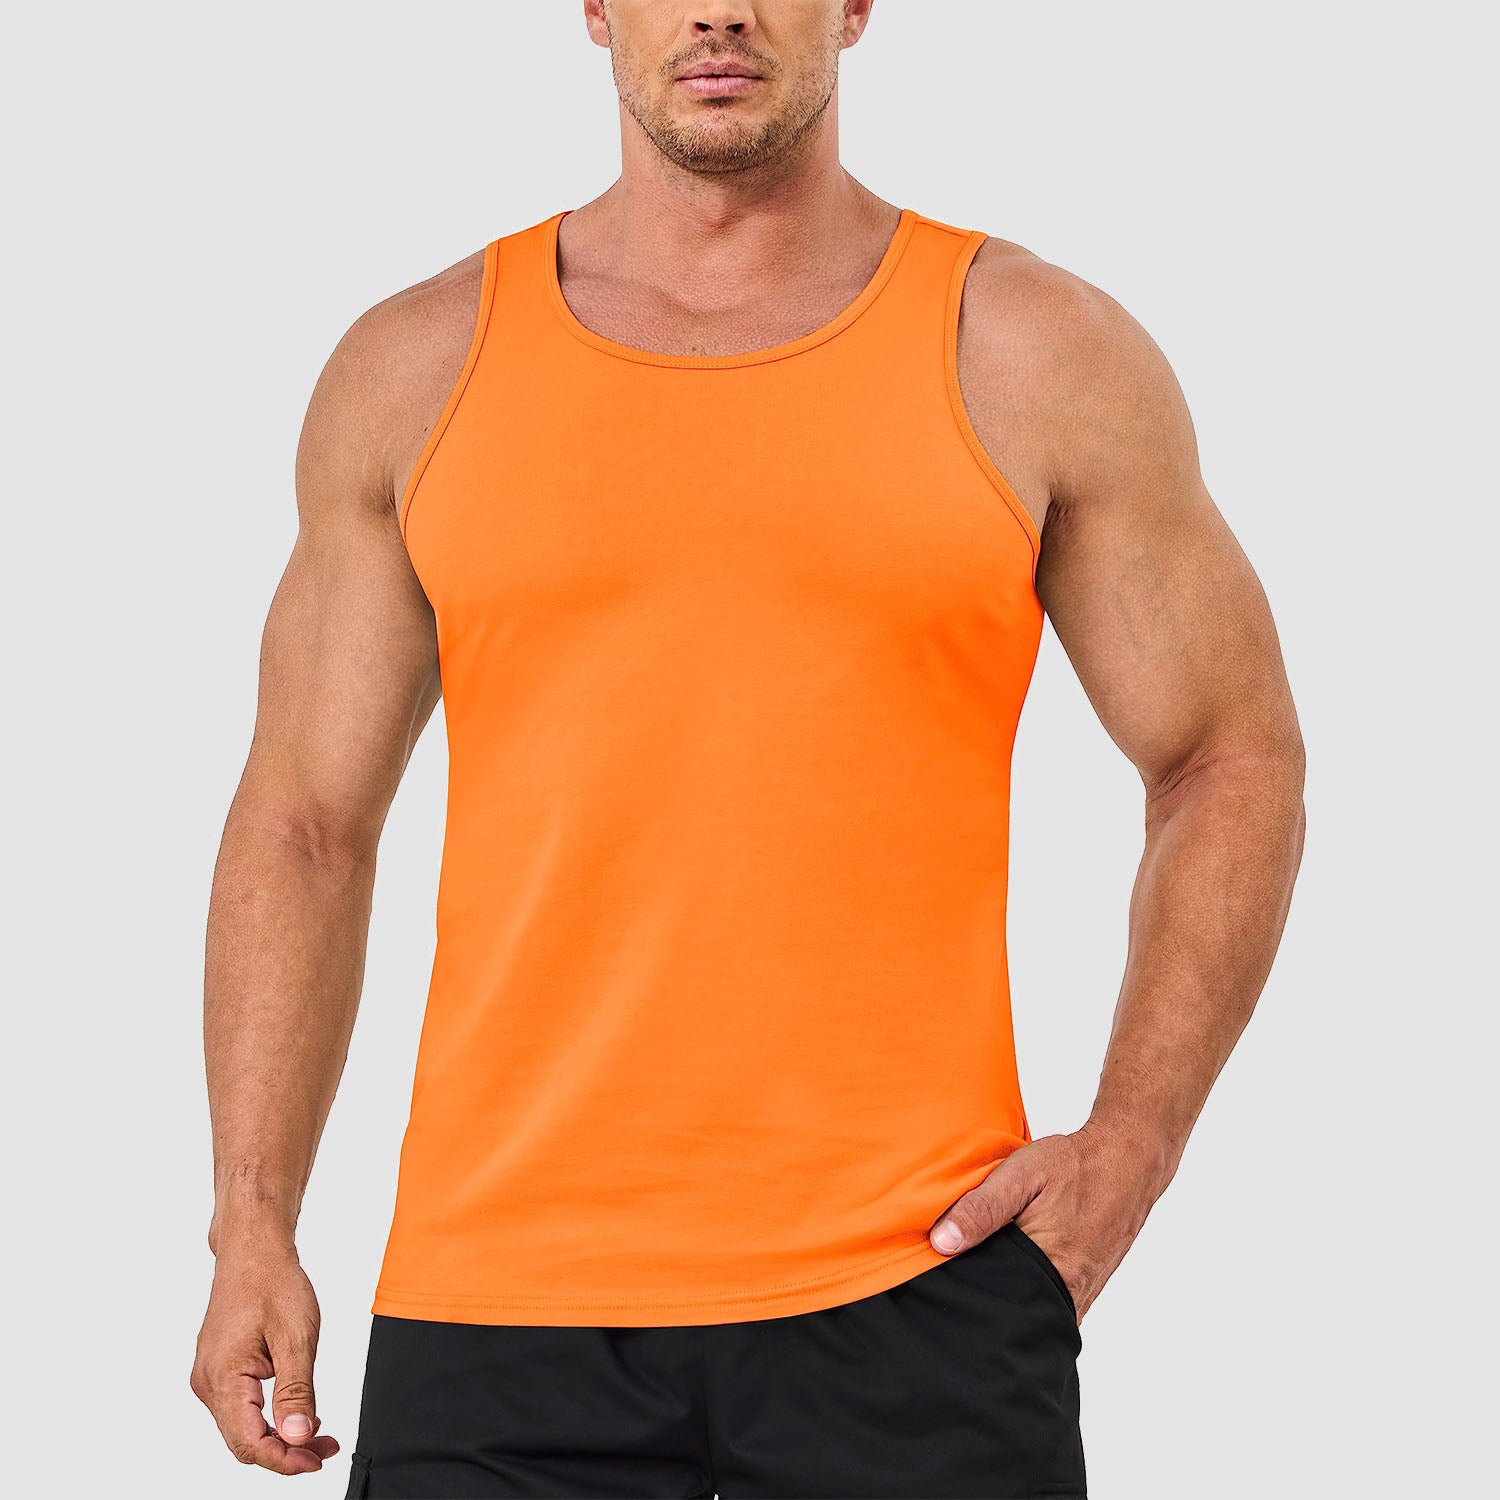 Men's Tank Top Cotton Sleeveless Shirt Lightweight Muscle Tank Tee Shirt